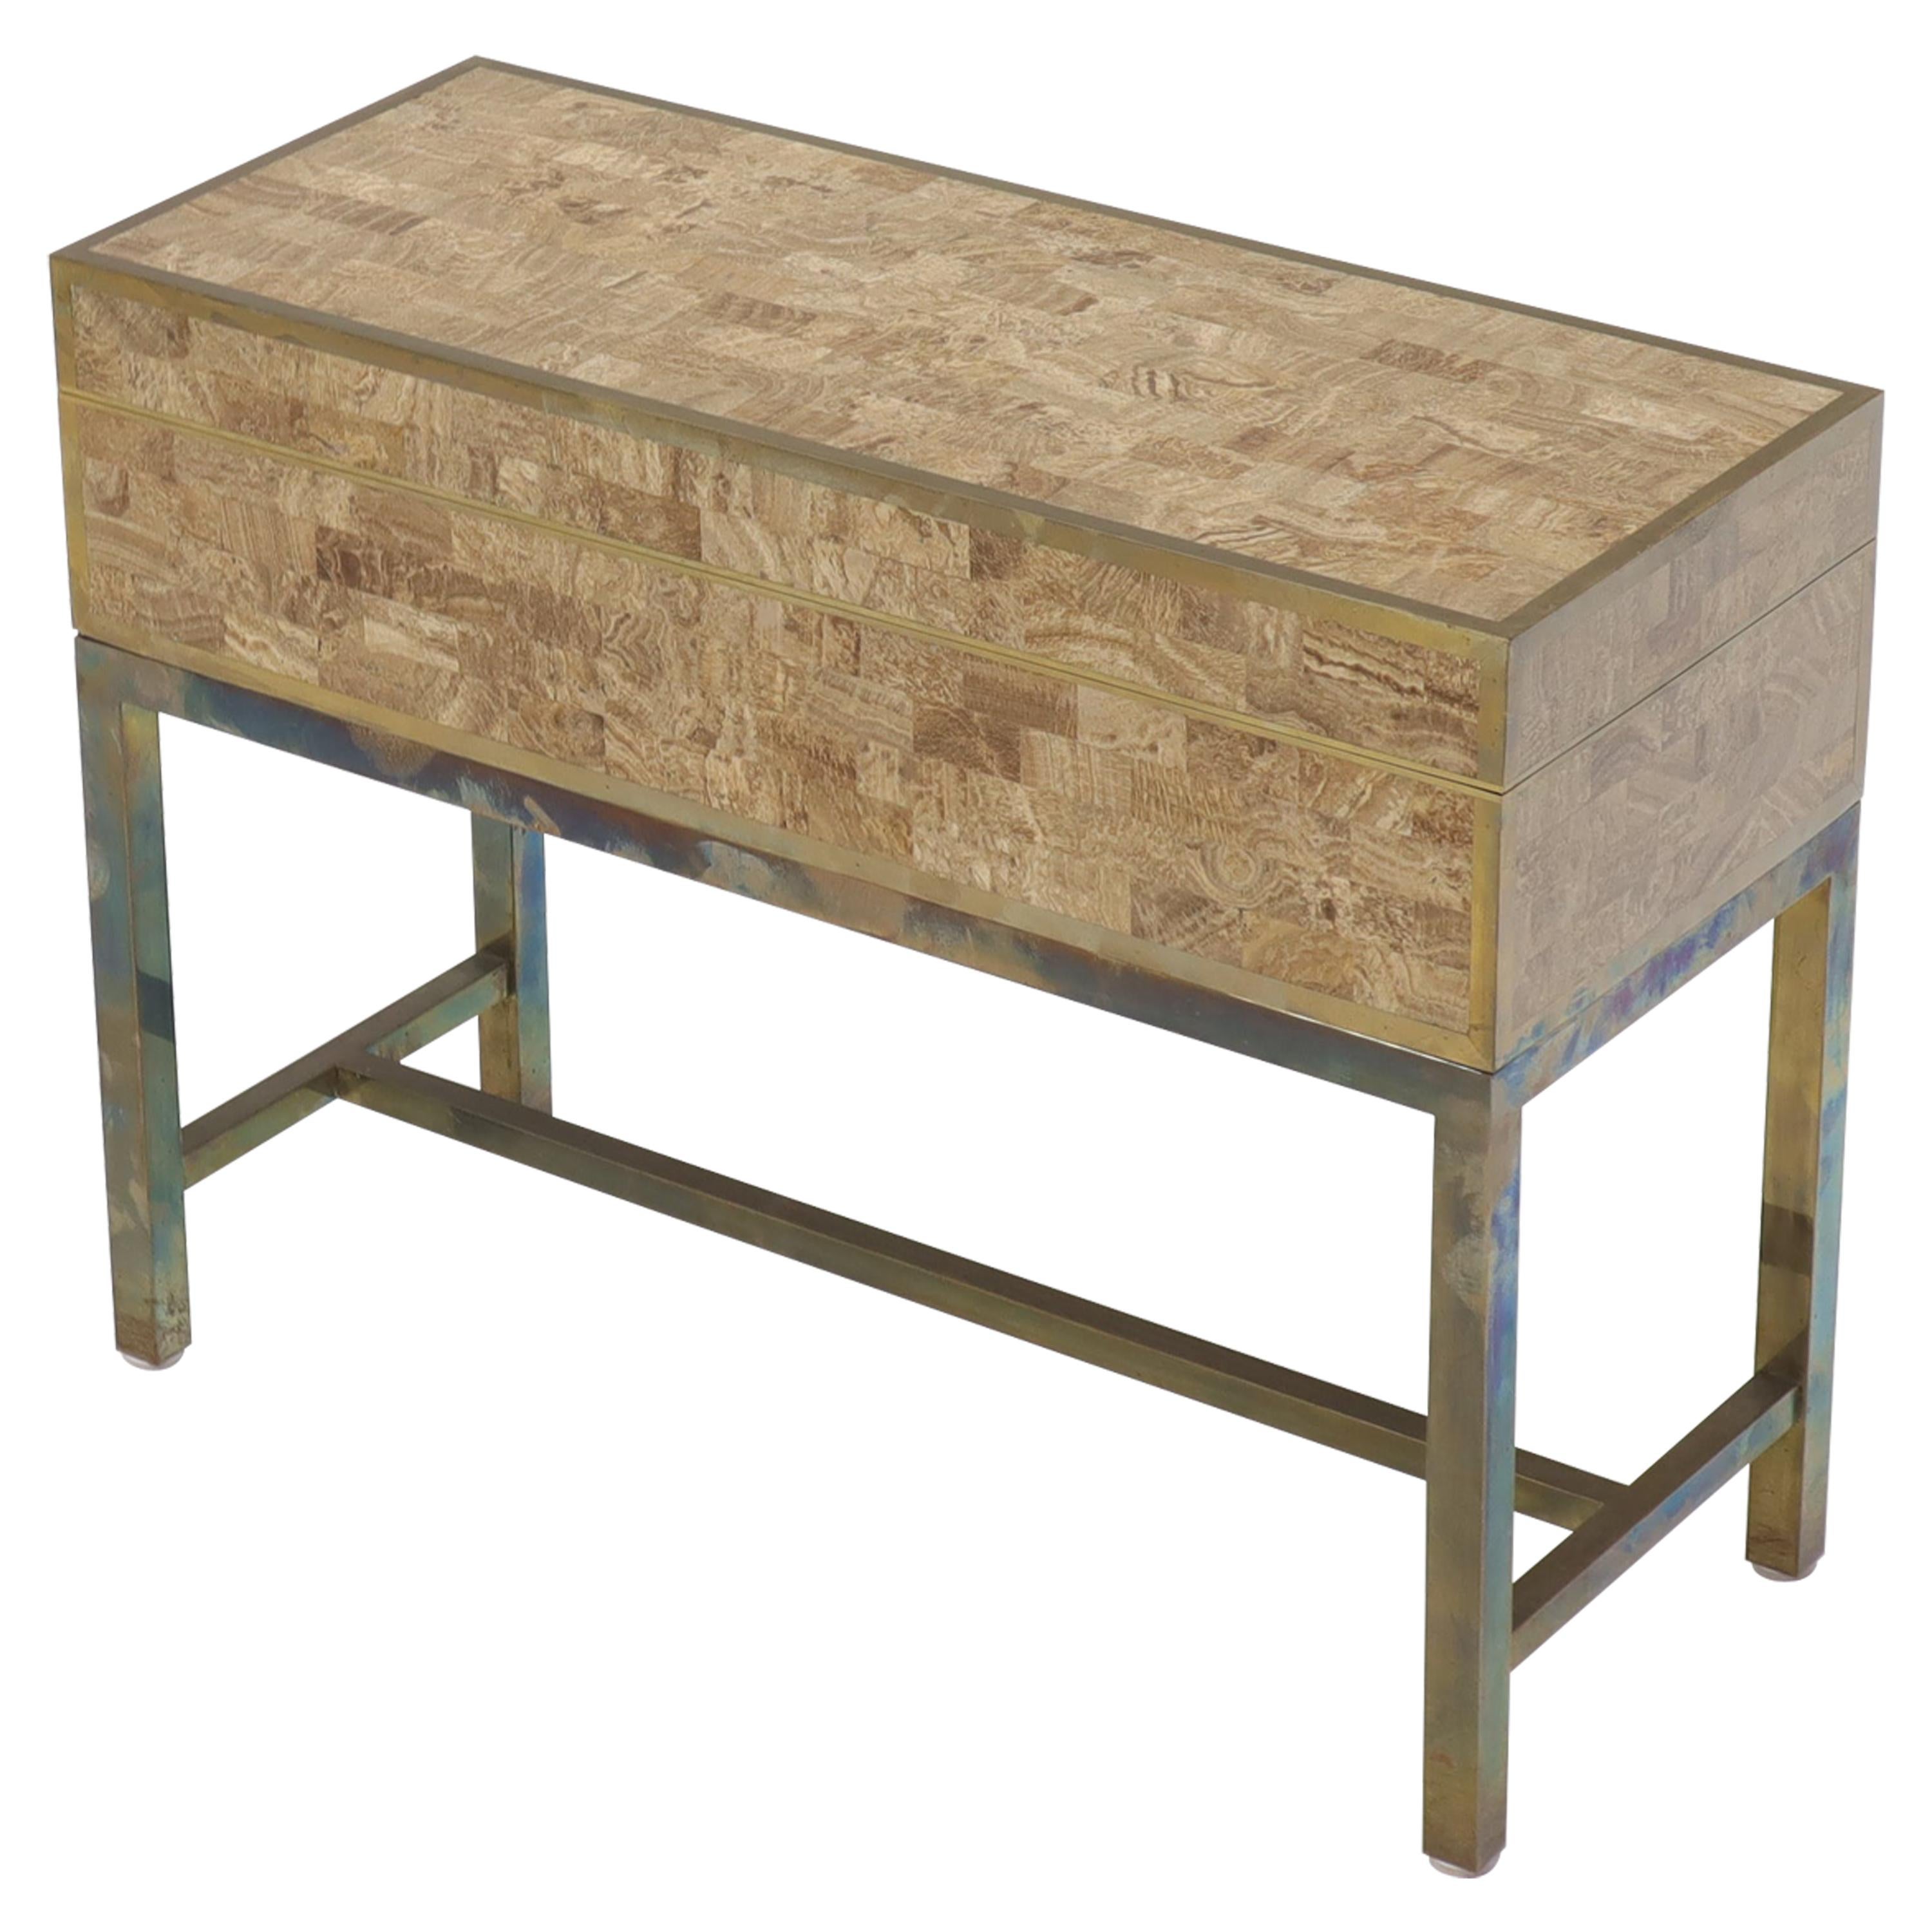 Table d'appoint console en forme de coffre à trésor avec base en laiton et pierre tessellée